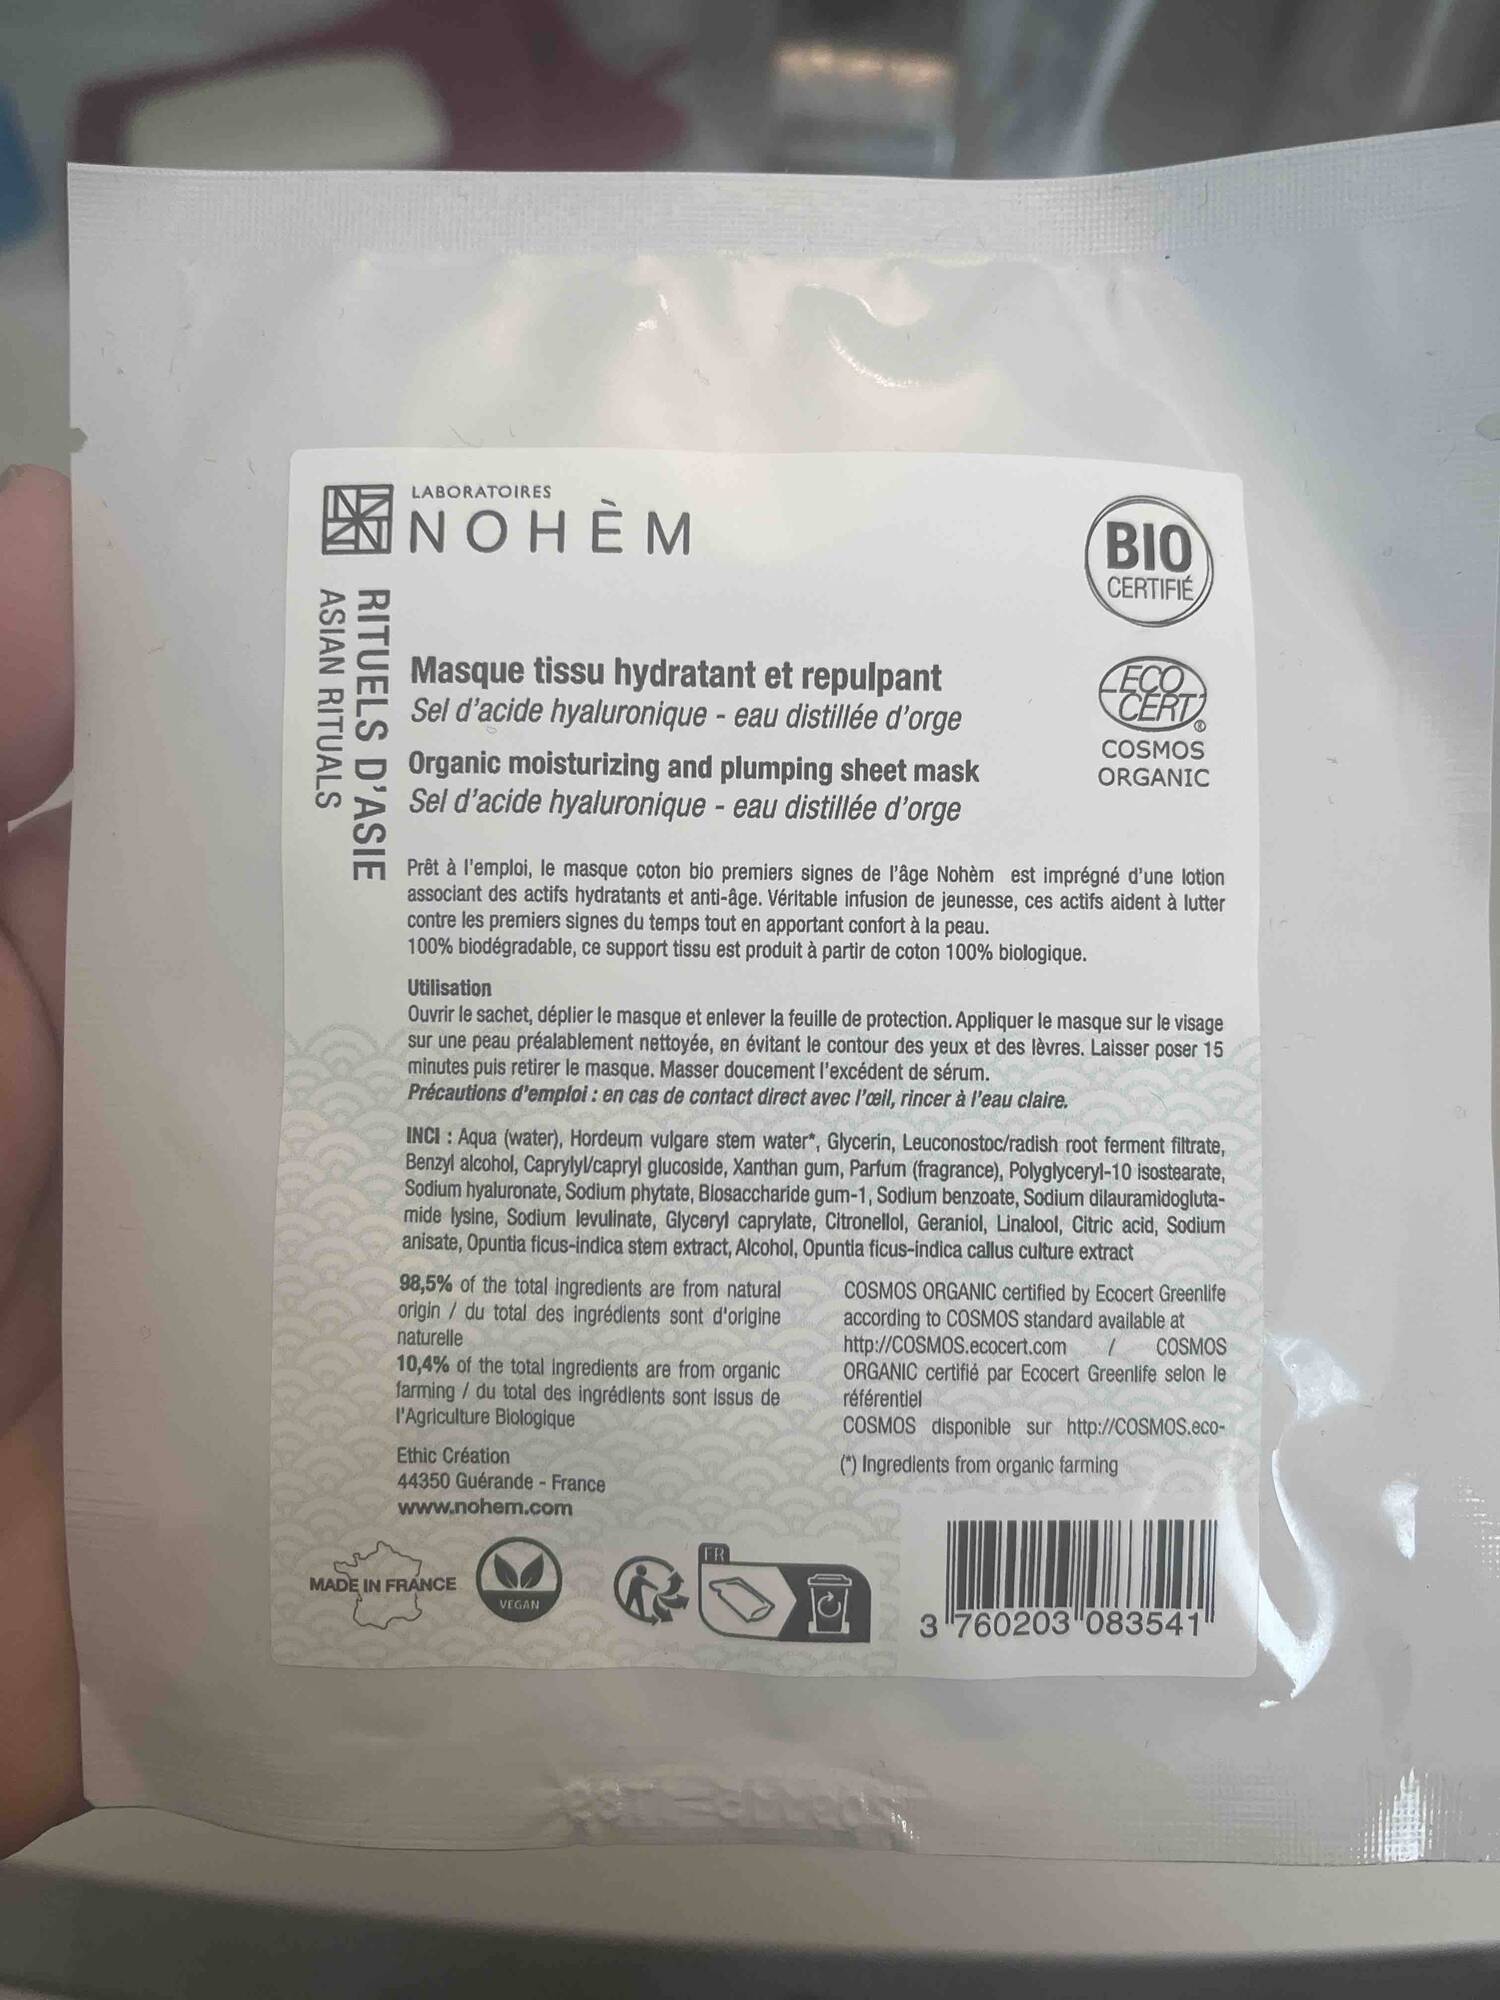 NOHÈM - Rituels d'Asie - Masque tissu hydratant et repulpant